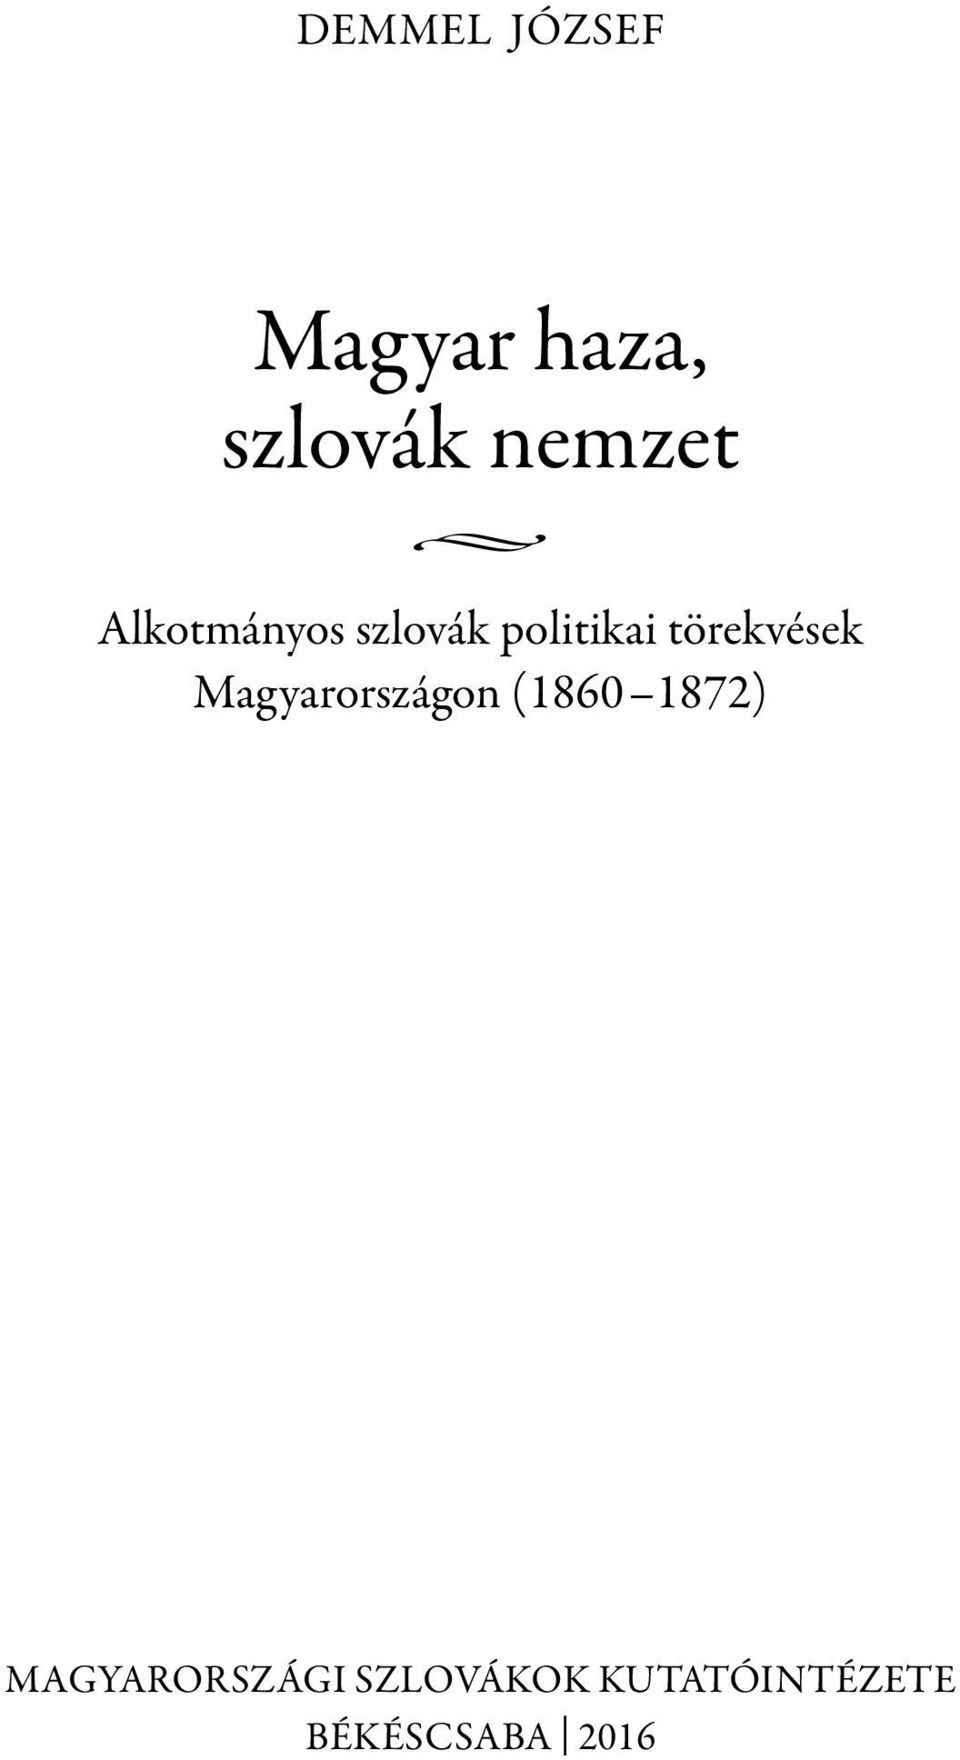 Magyarországon (1860 1872) MAGYARORSZÁGI